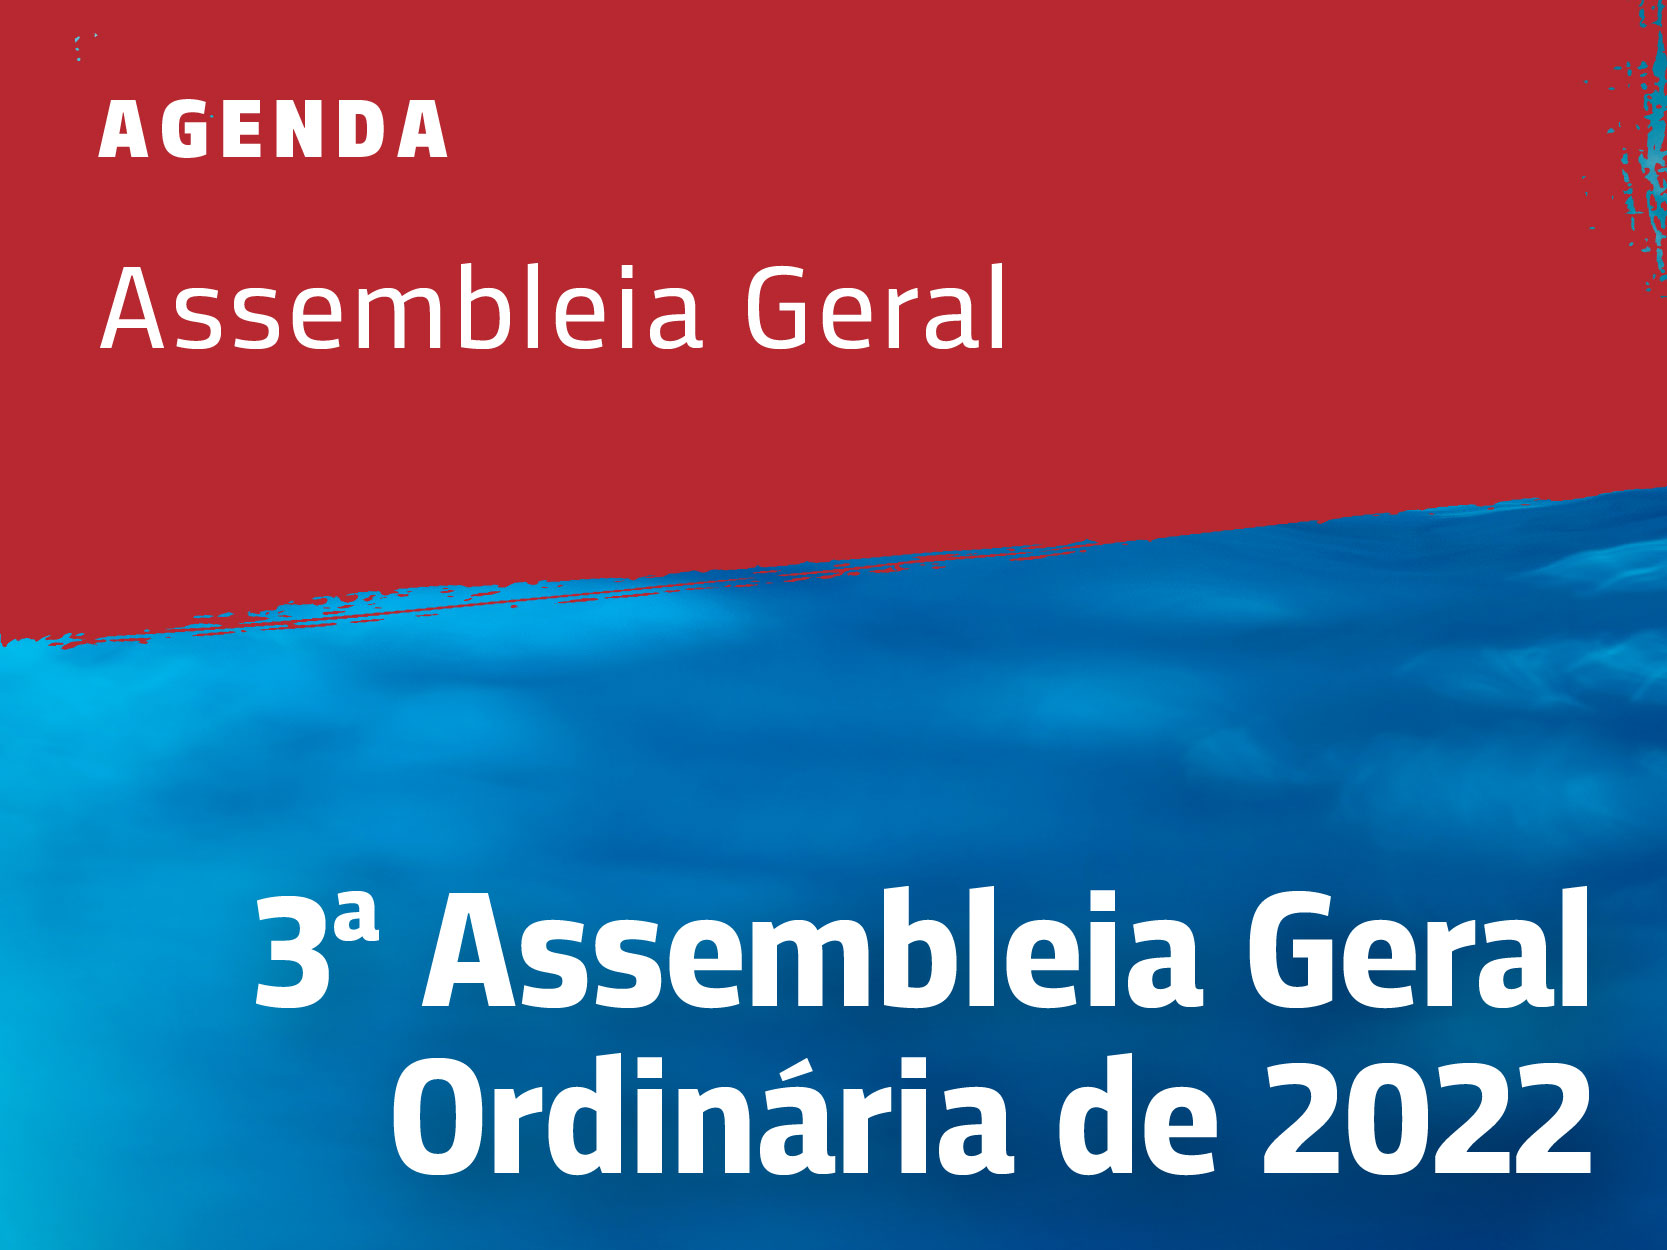 3ª Assembleia Geral Extraordinária de 2022